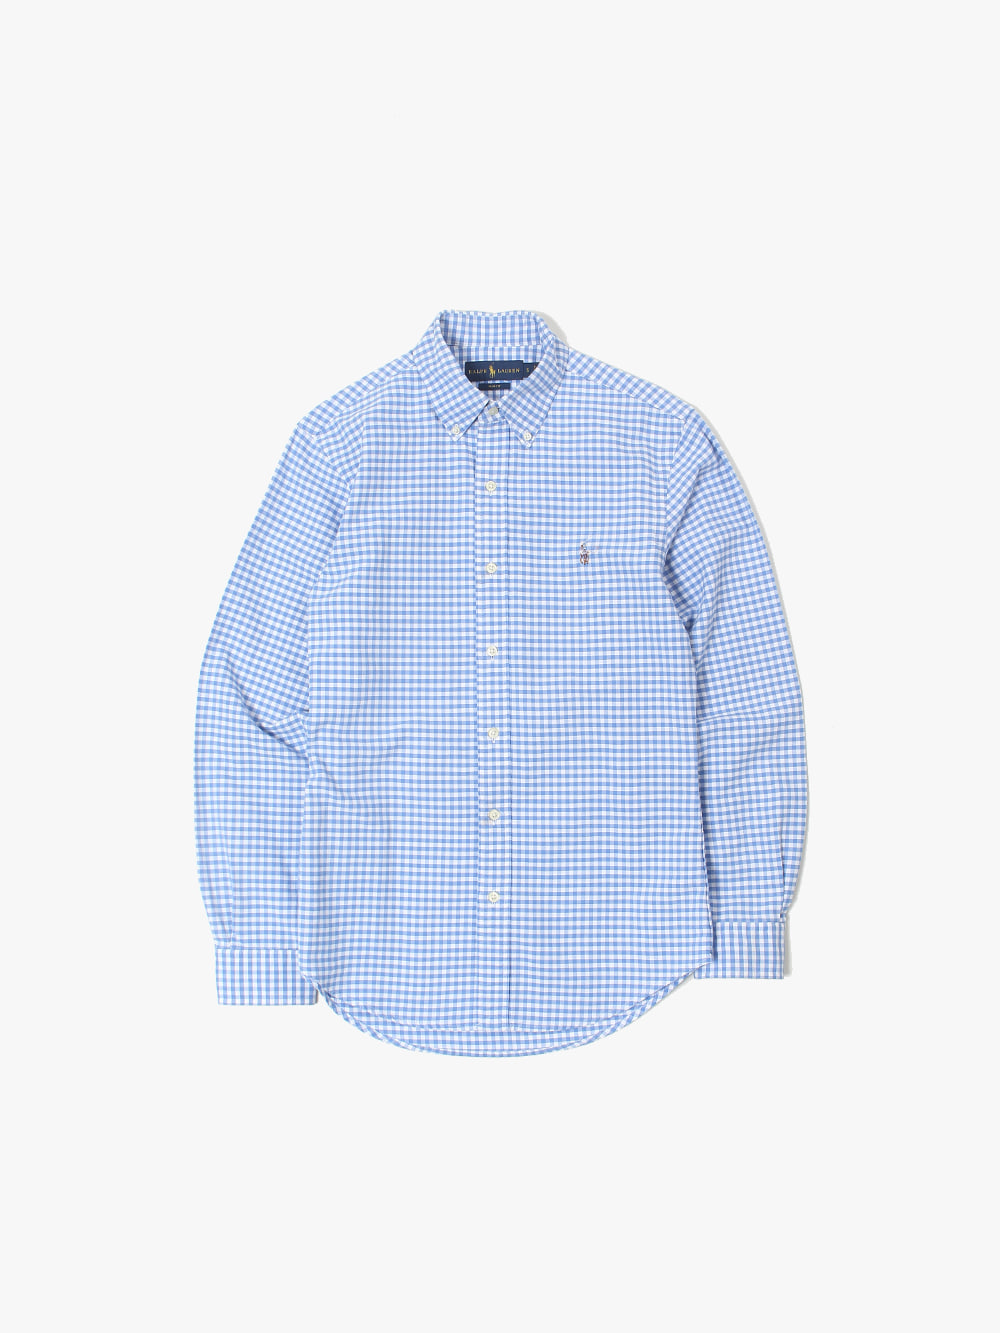 [ S ] Polo Ralph Lauren Shirt (6151)